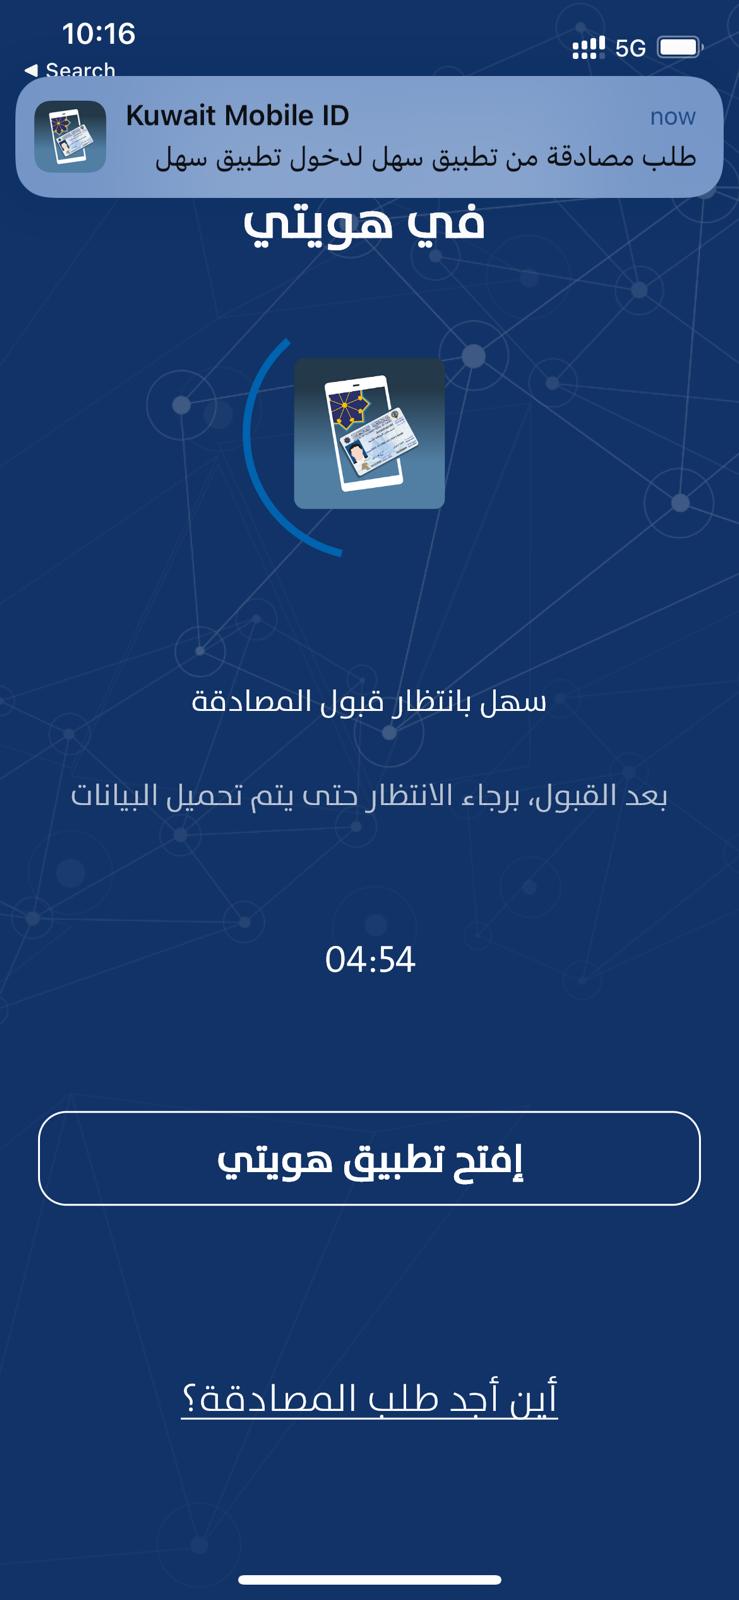 Sahel App Kuwiat Authentication using Kuwait Mobile ID APP